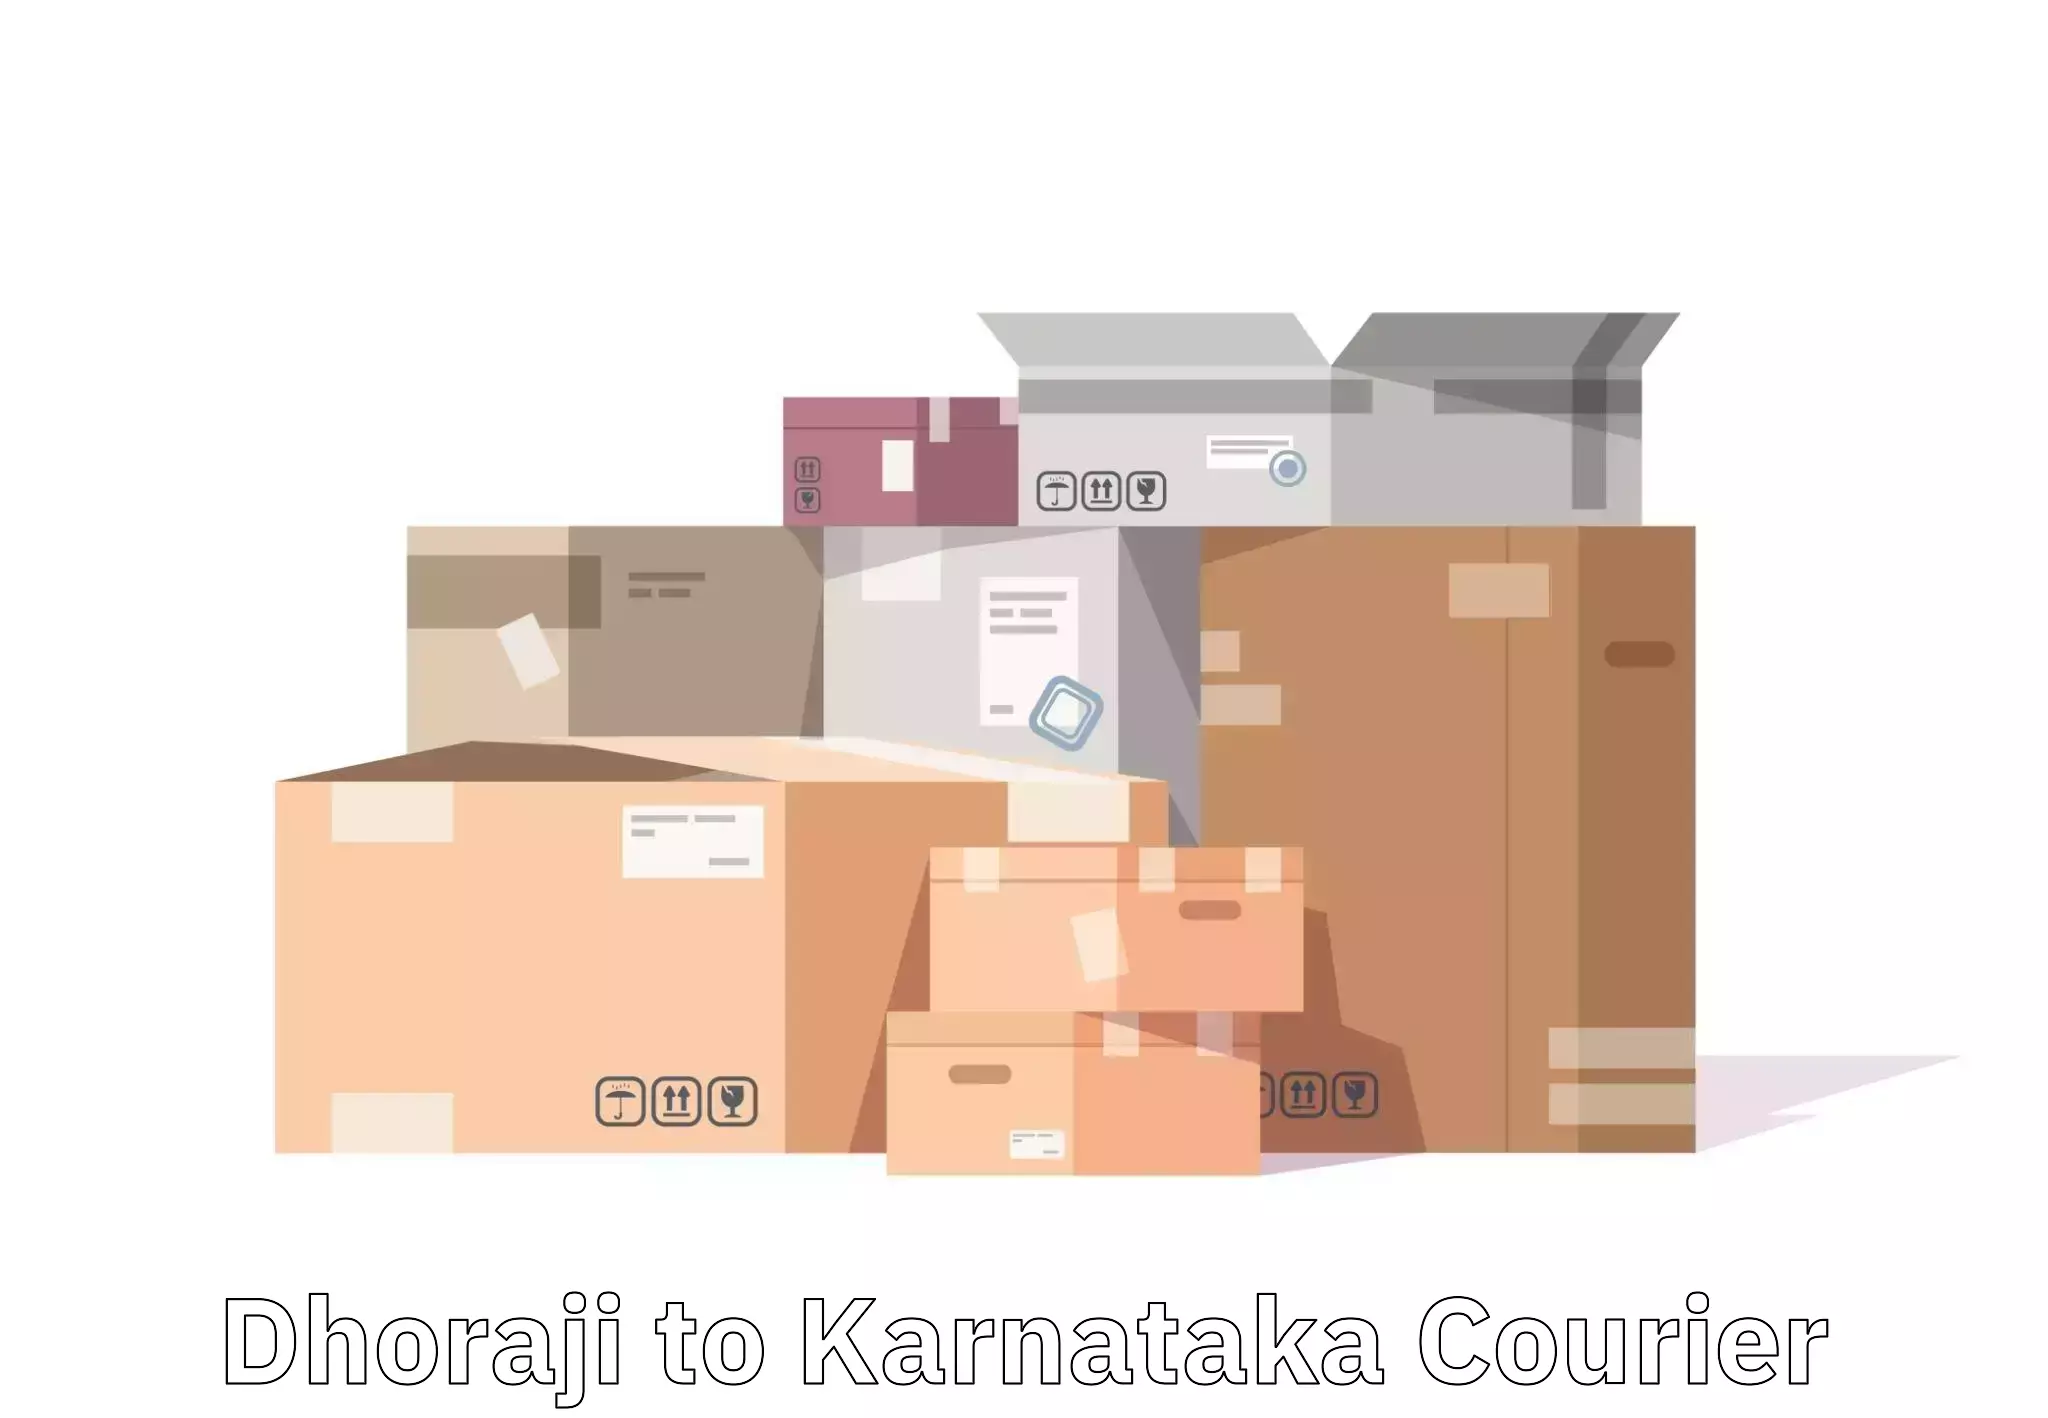 Baggage transport professionals Dhoraji to Karnataka